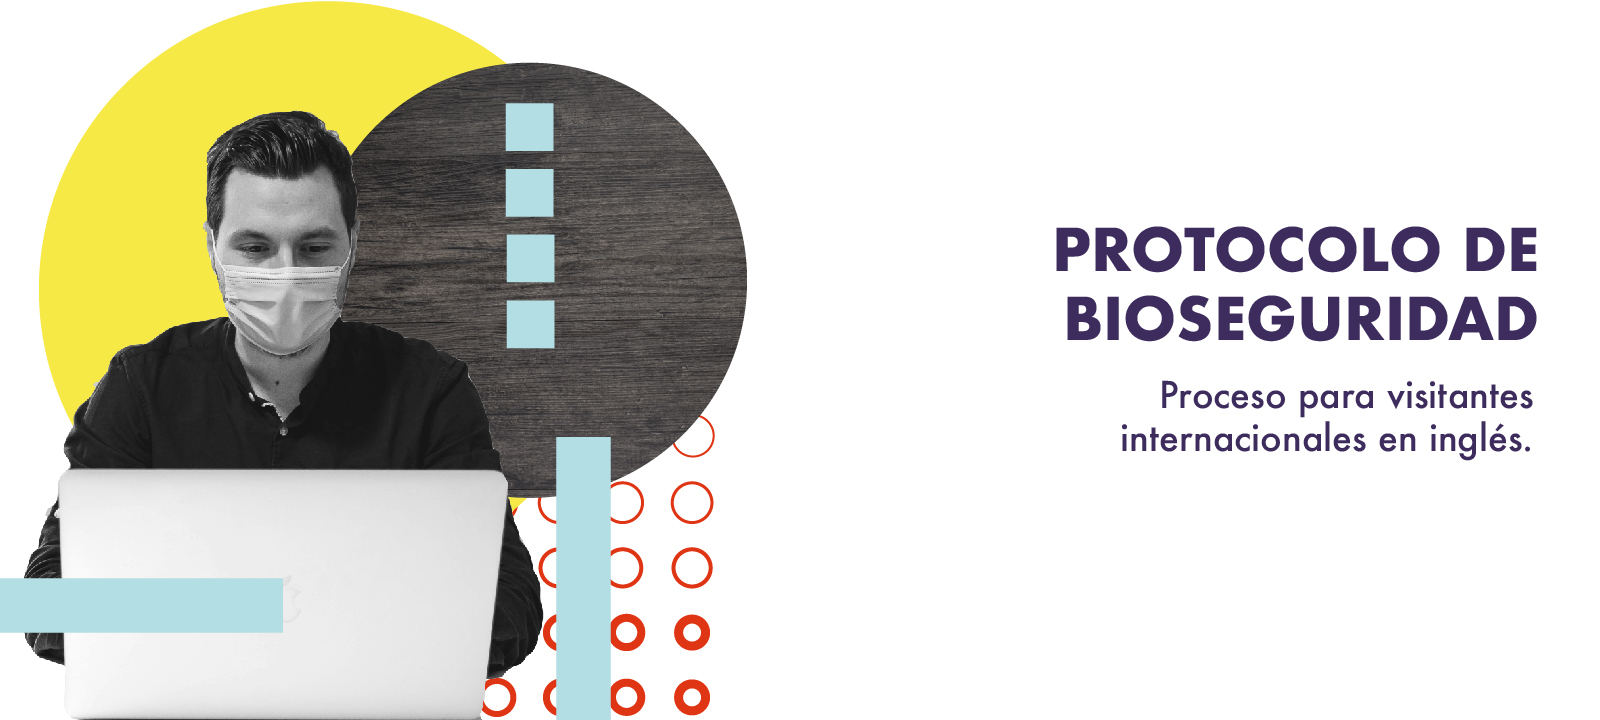 Protocolo de bioseguridad: proceso para visitantes internacionales en inglés